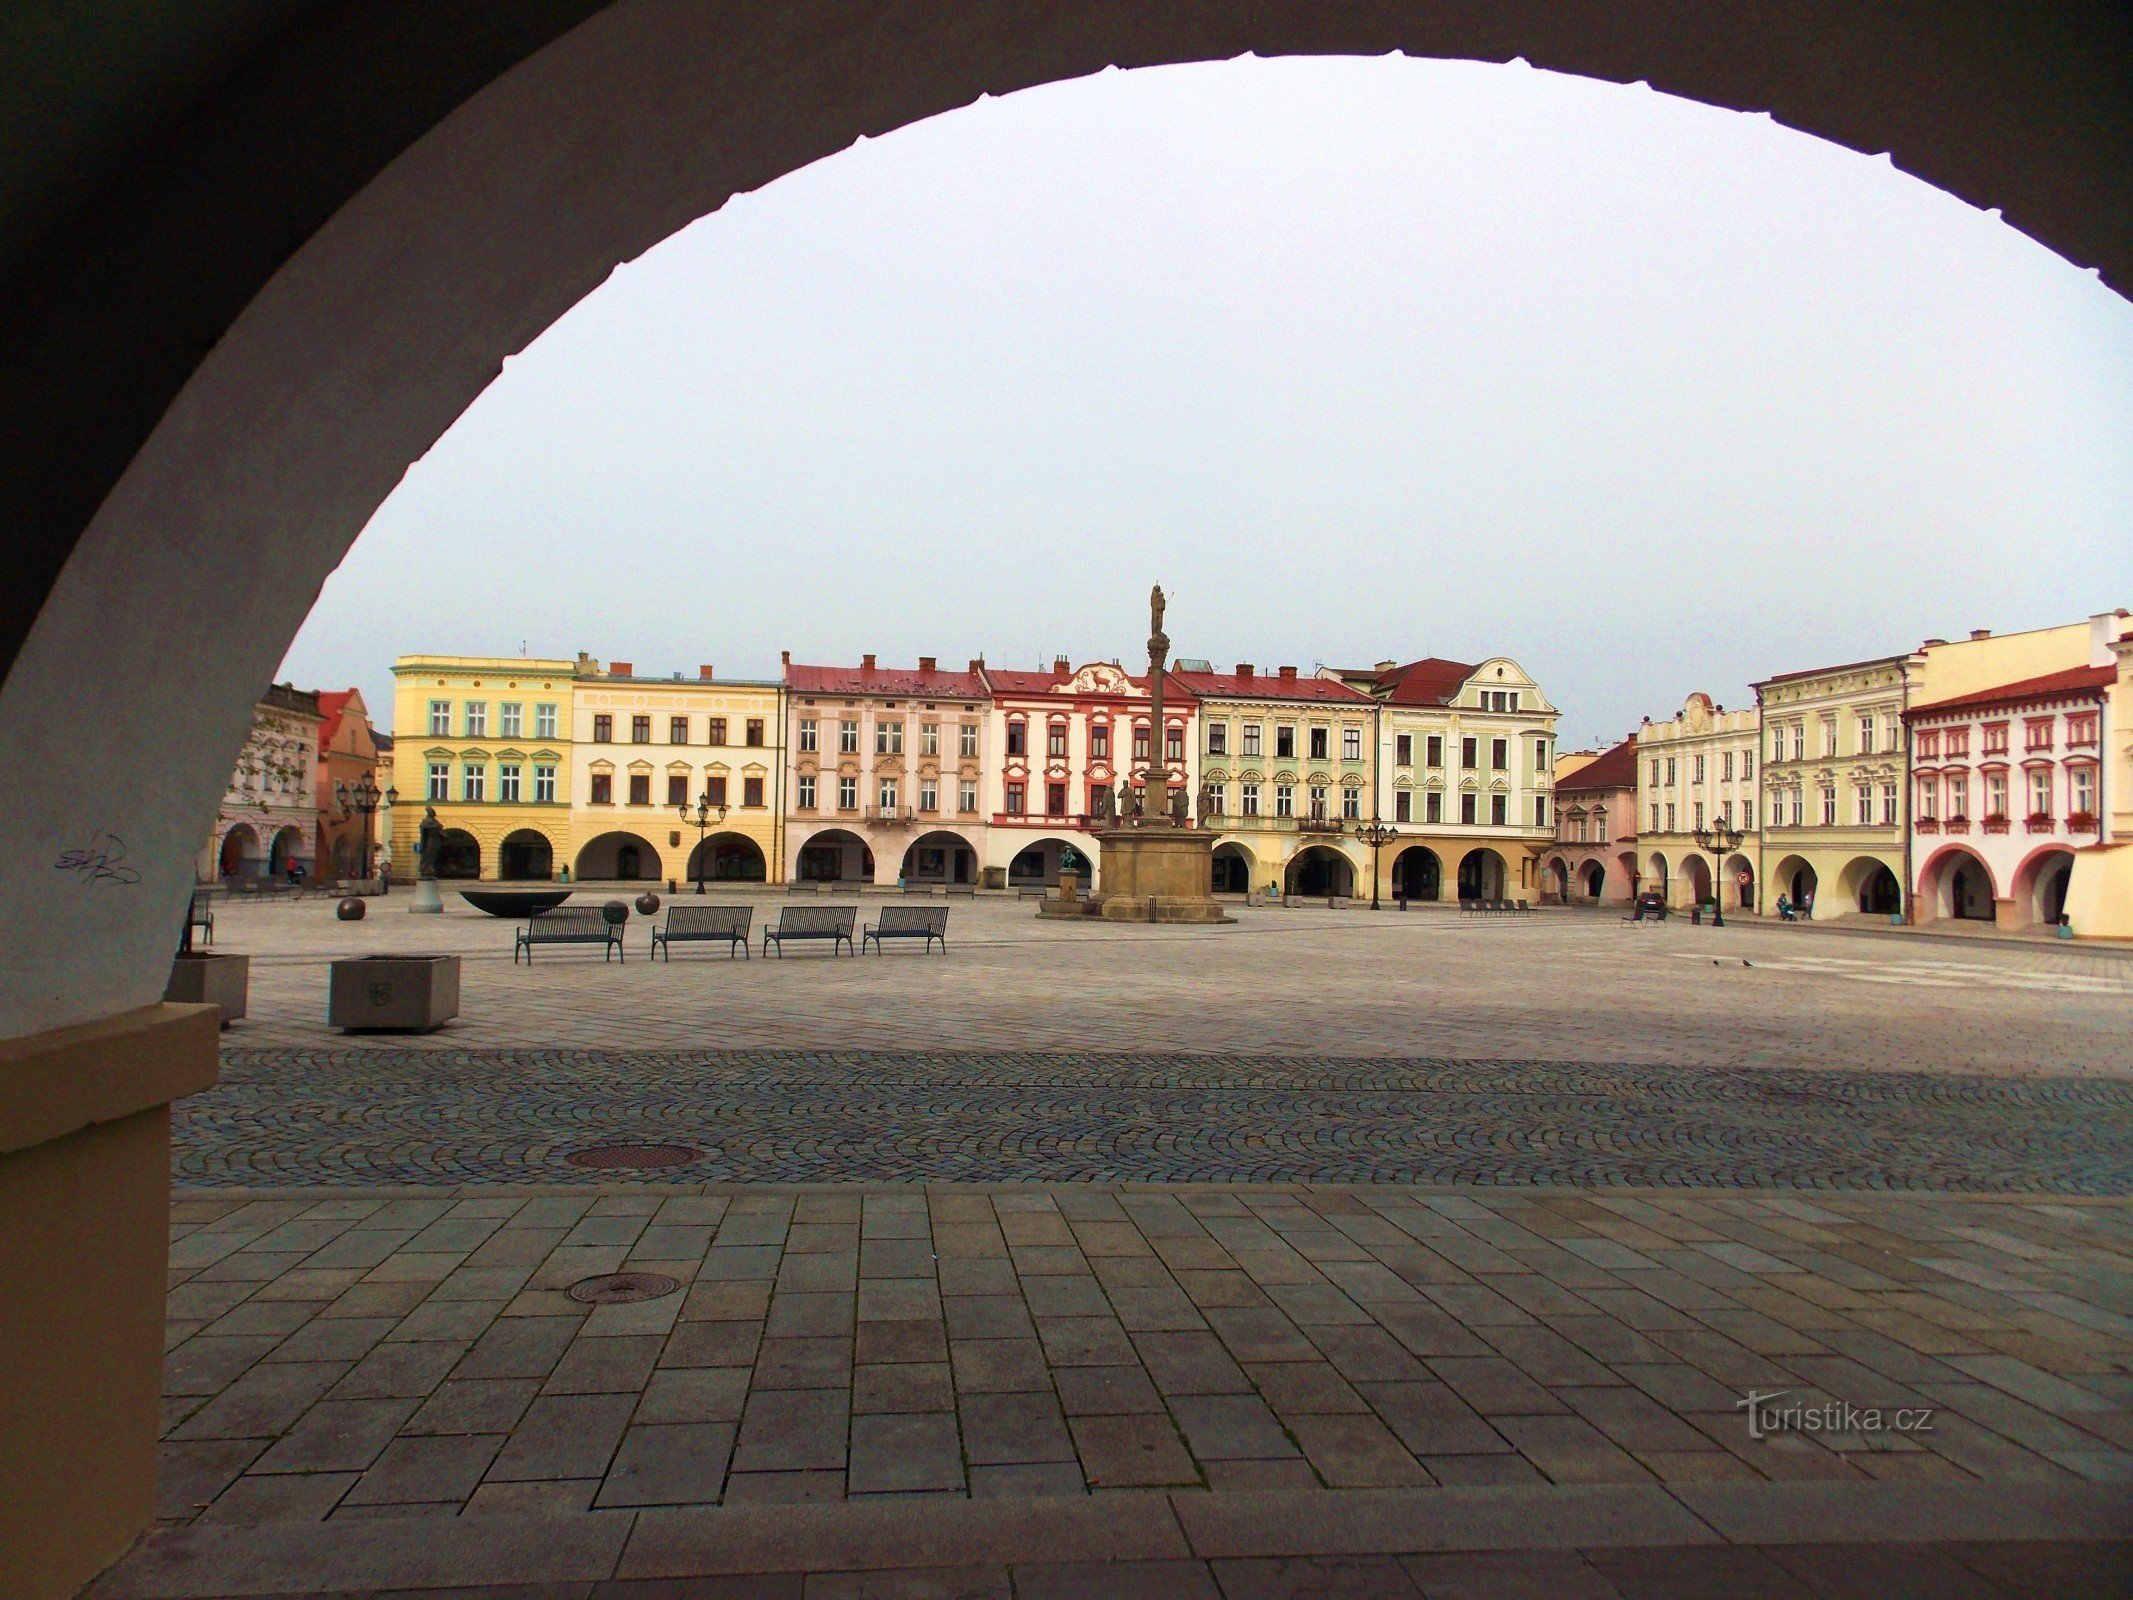 Praça Masaryk - centro histórico em Nové Jičín